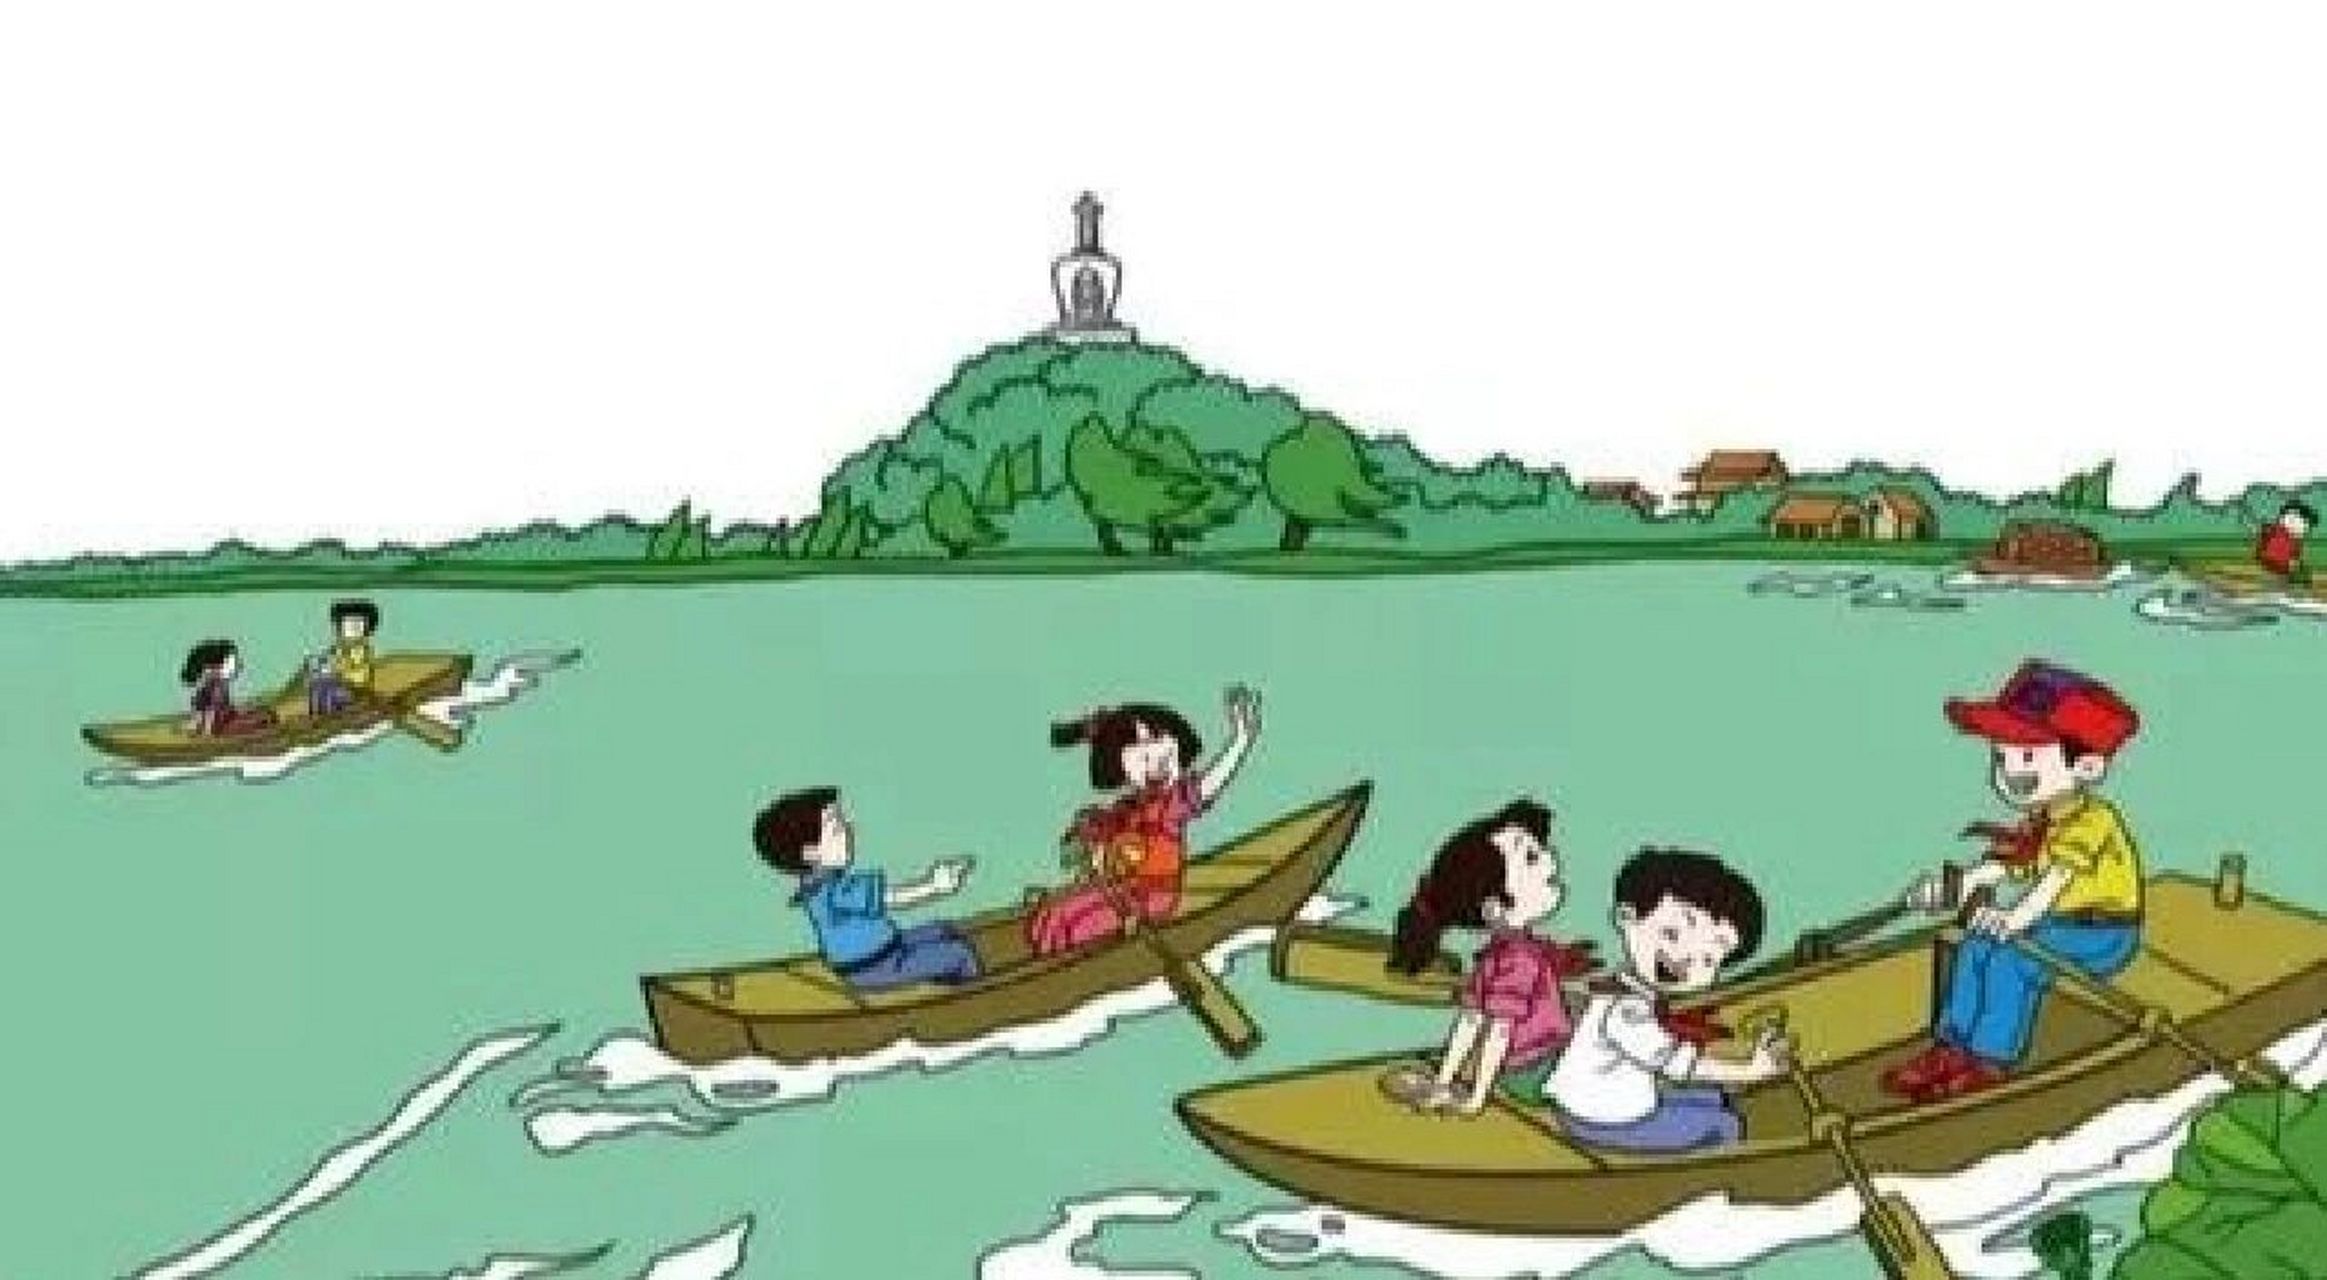 看图写话 划船 一个风和日丽的下午,我们几位小伙伴去公园划船